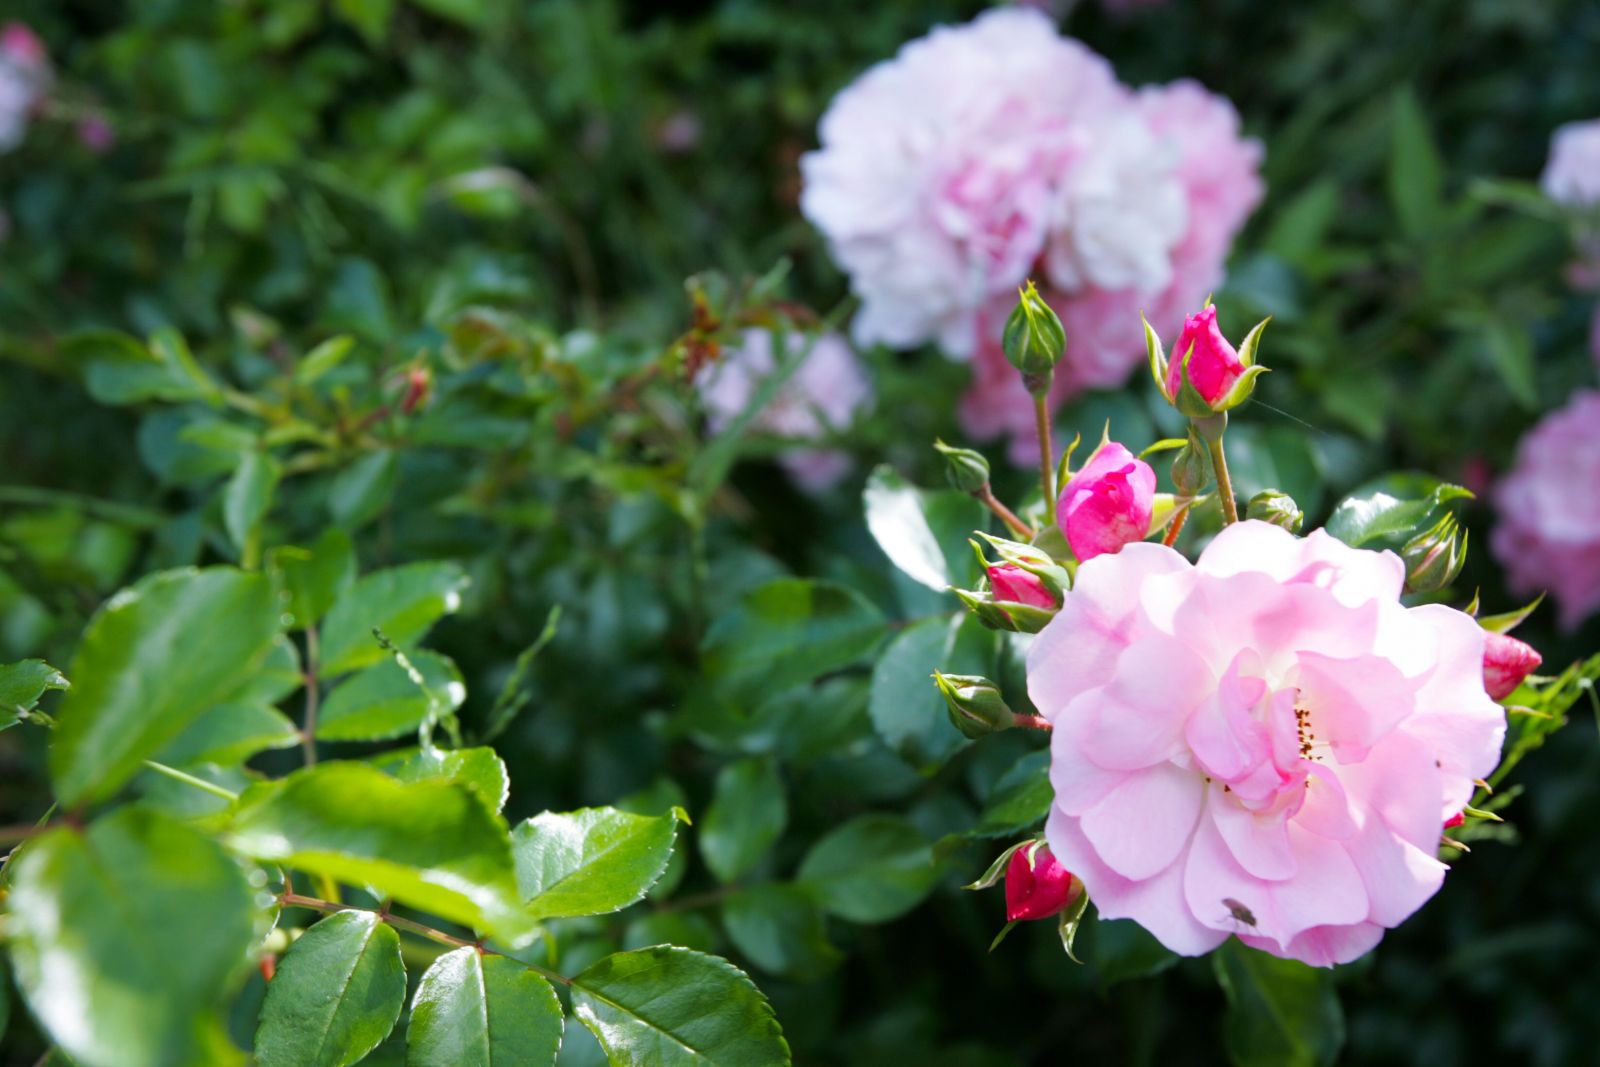 Khu vườn là một thiên đường của những người yêu hoa với những đóa hồng đương độ đẹp nhất, rực rỡ và kiêu sa khoe sắc ở Nam bán cầu.